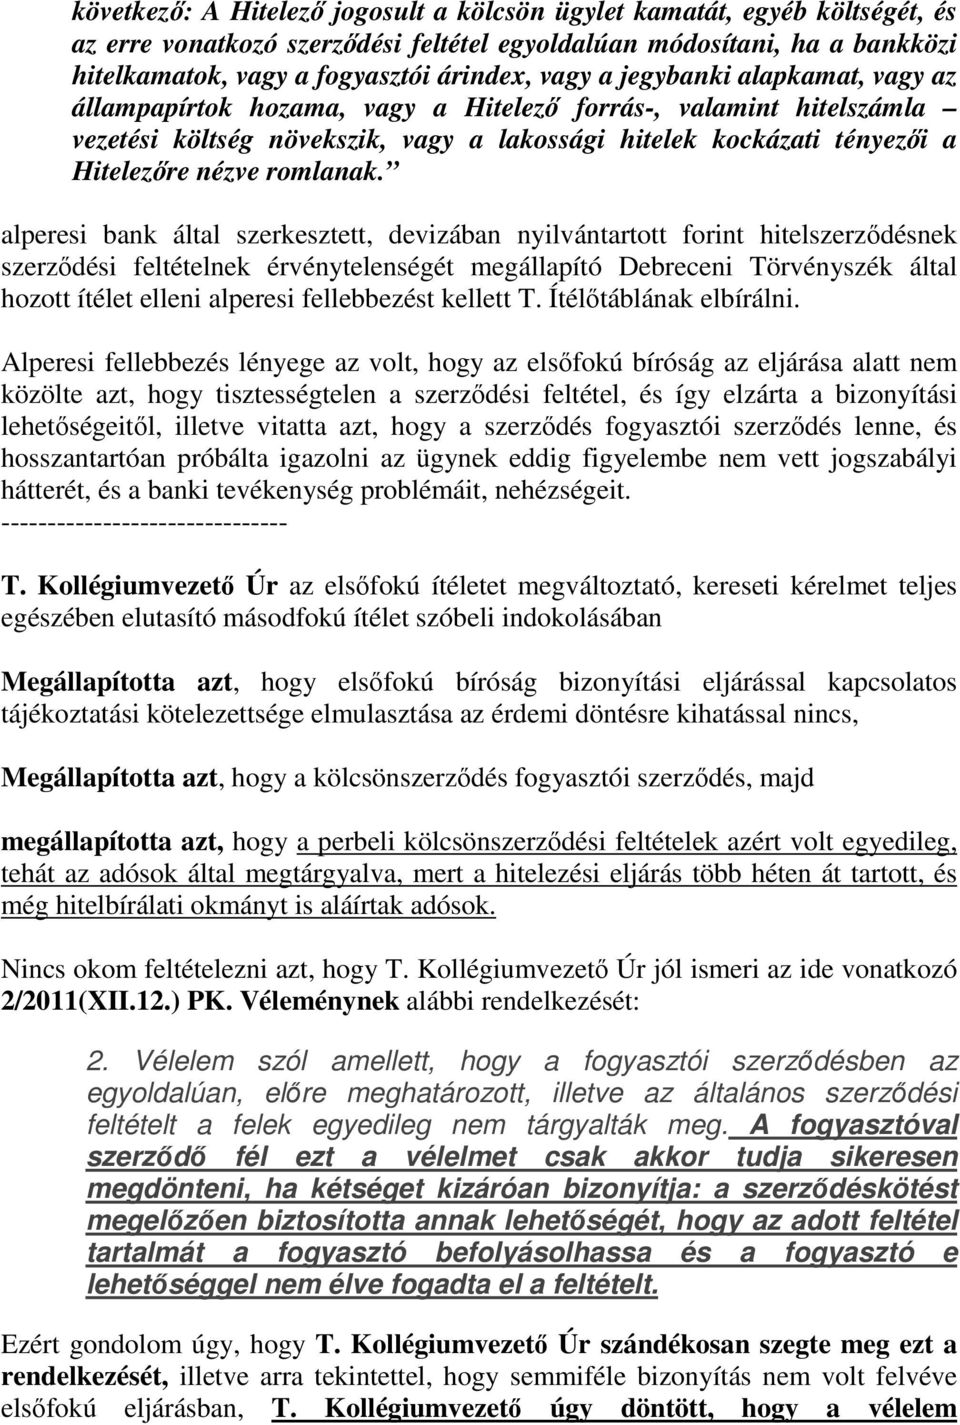 alperesi bank által szerkesztett, devizában nyilvántartott forint hitelszerződésnek szerződési feltételnek érvénytelenségét megállapító Debreceni Törvényszék által hozott ítélet elleni alperesi